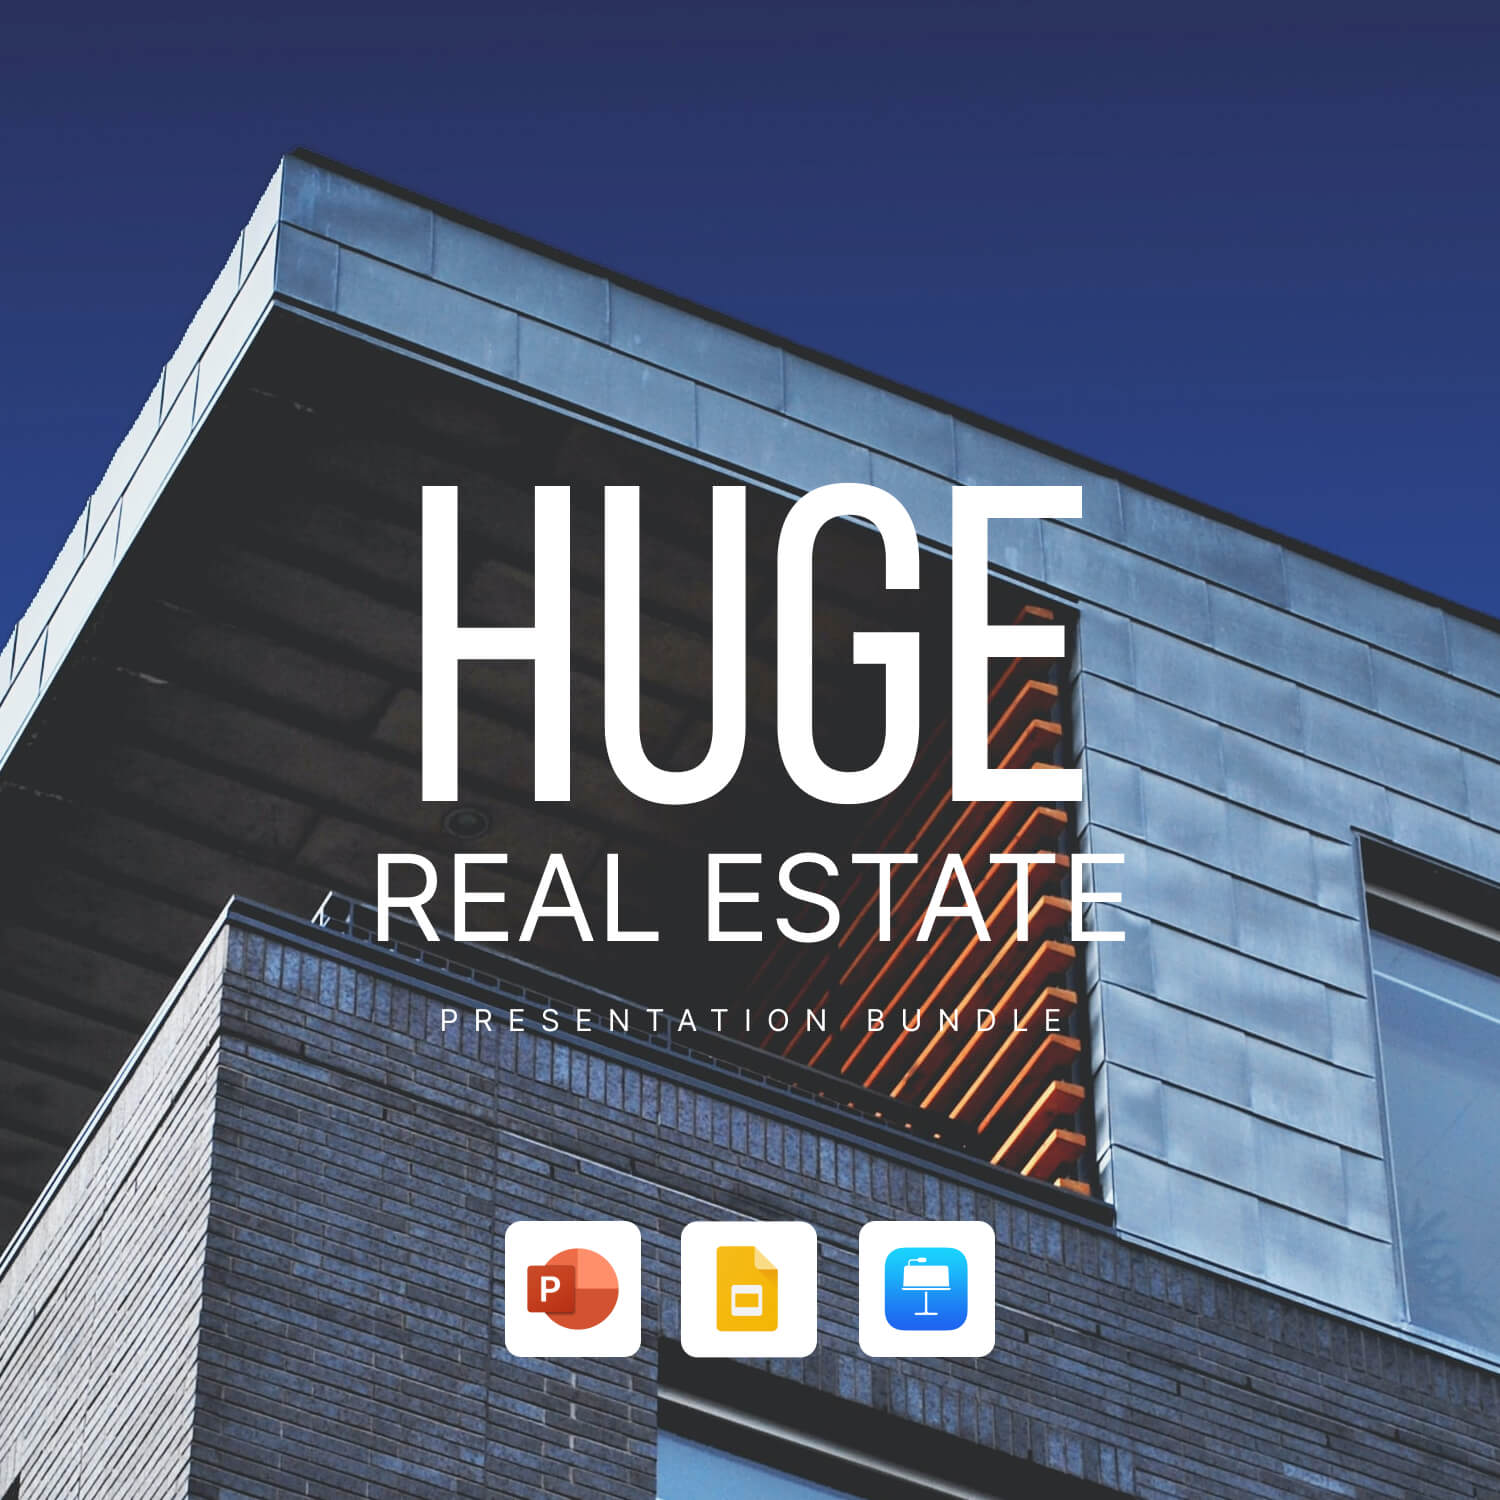 huge real estate presentation bundle cover image.